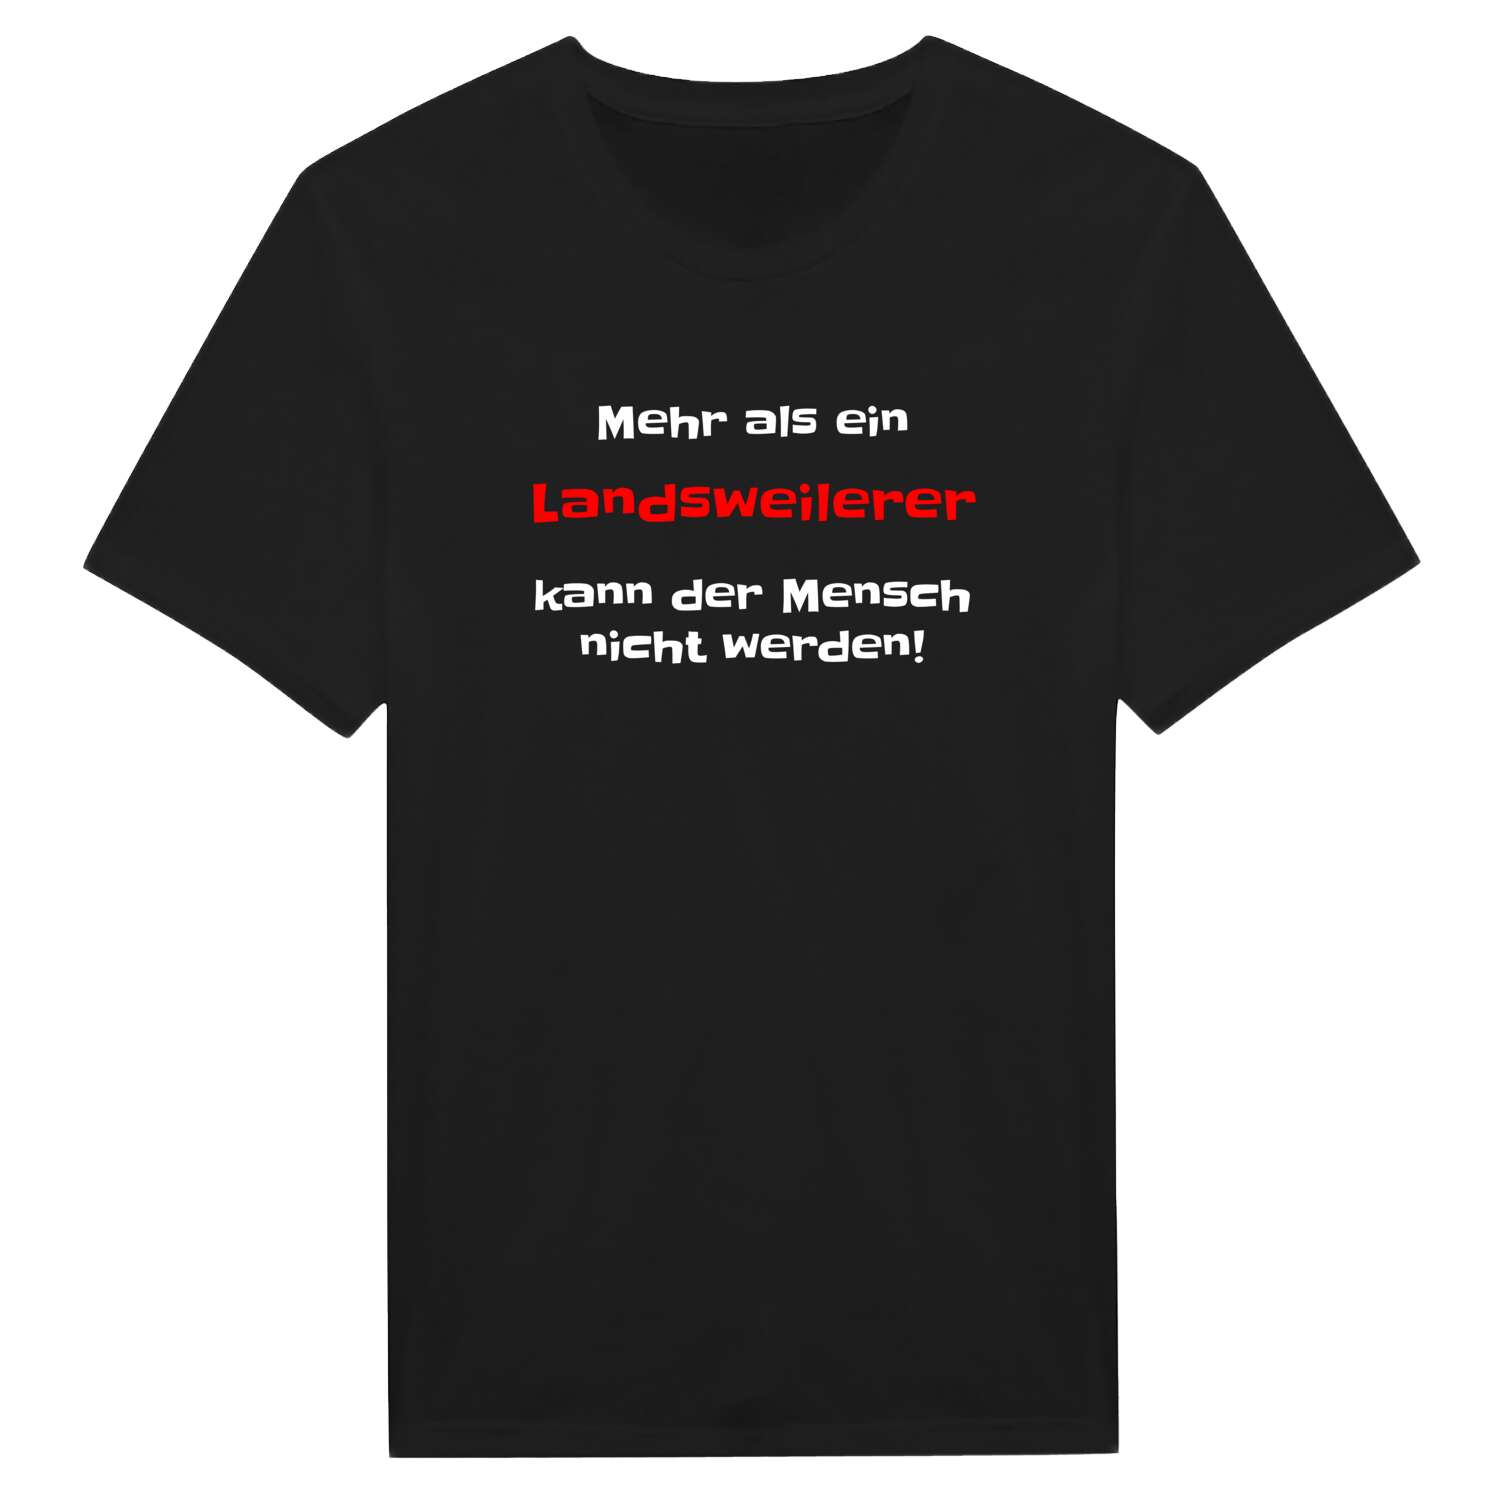 Landsweiler T-Shirt »Mehr als ein«